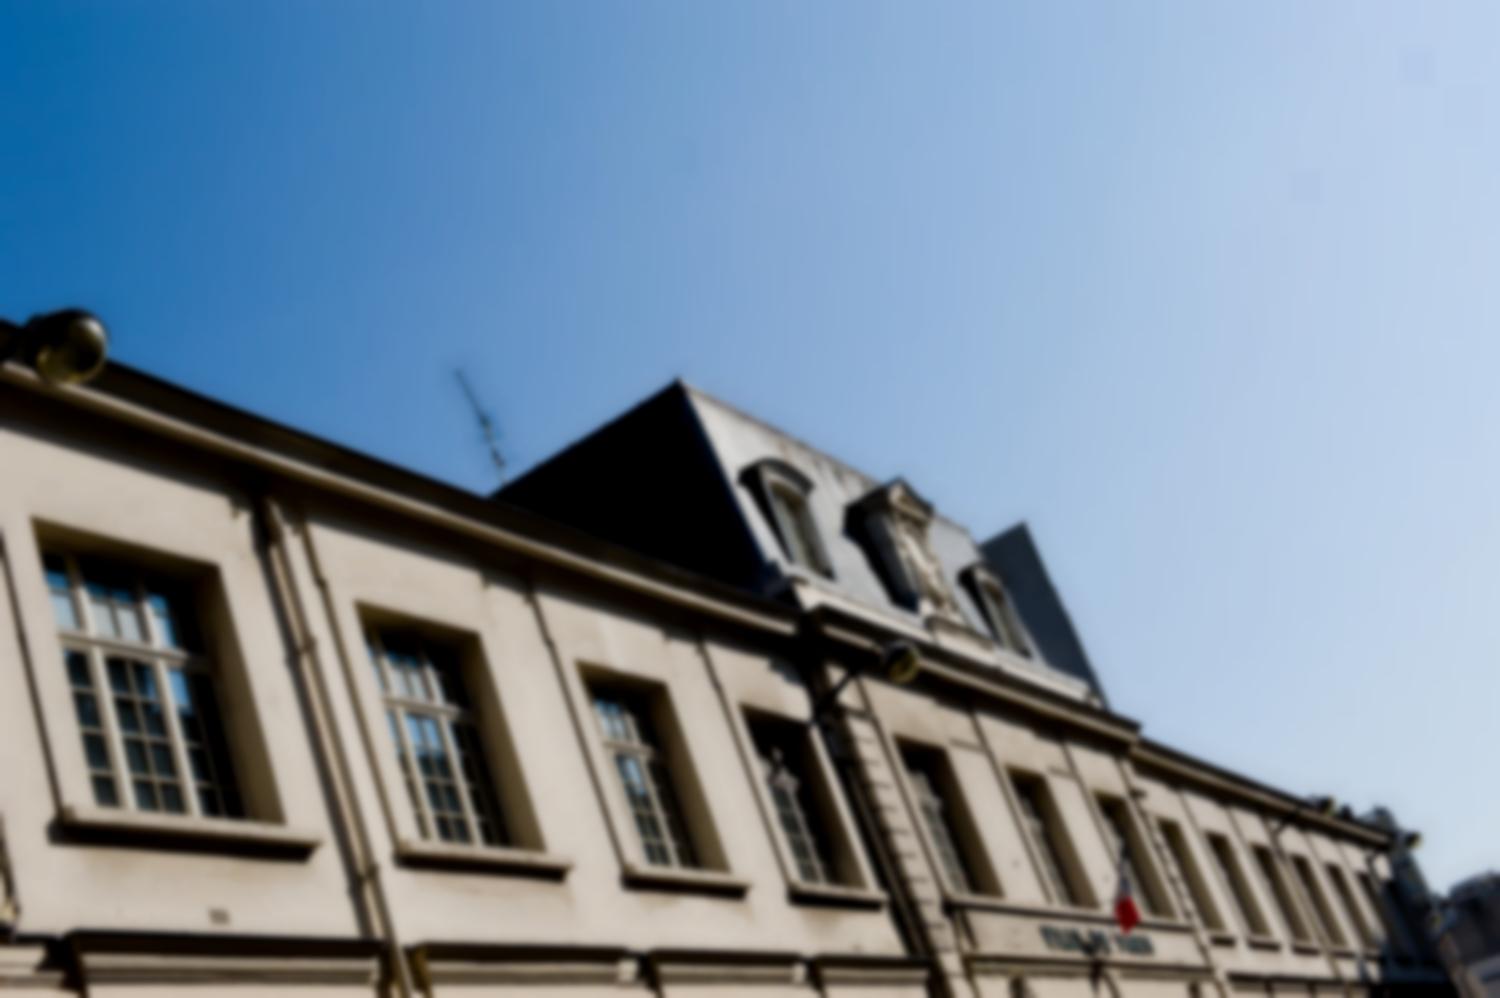 La façade ensoleillée de l'école de la rue Tandou. Paris, juillet 2011.